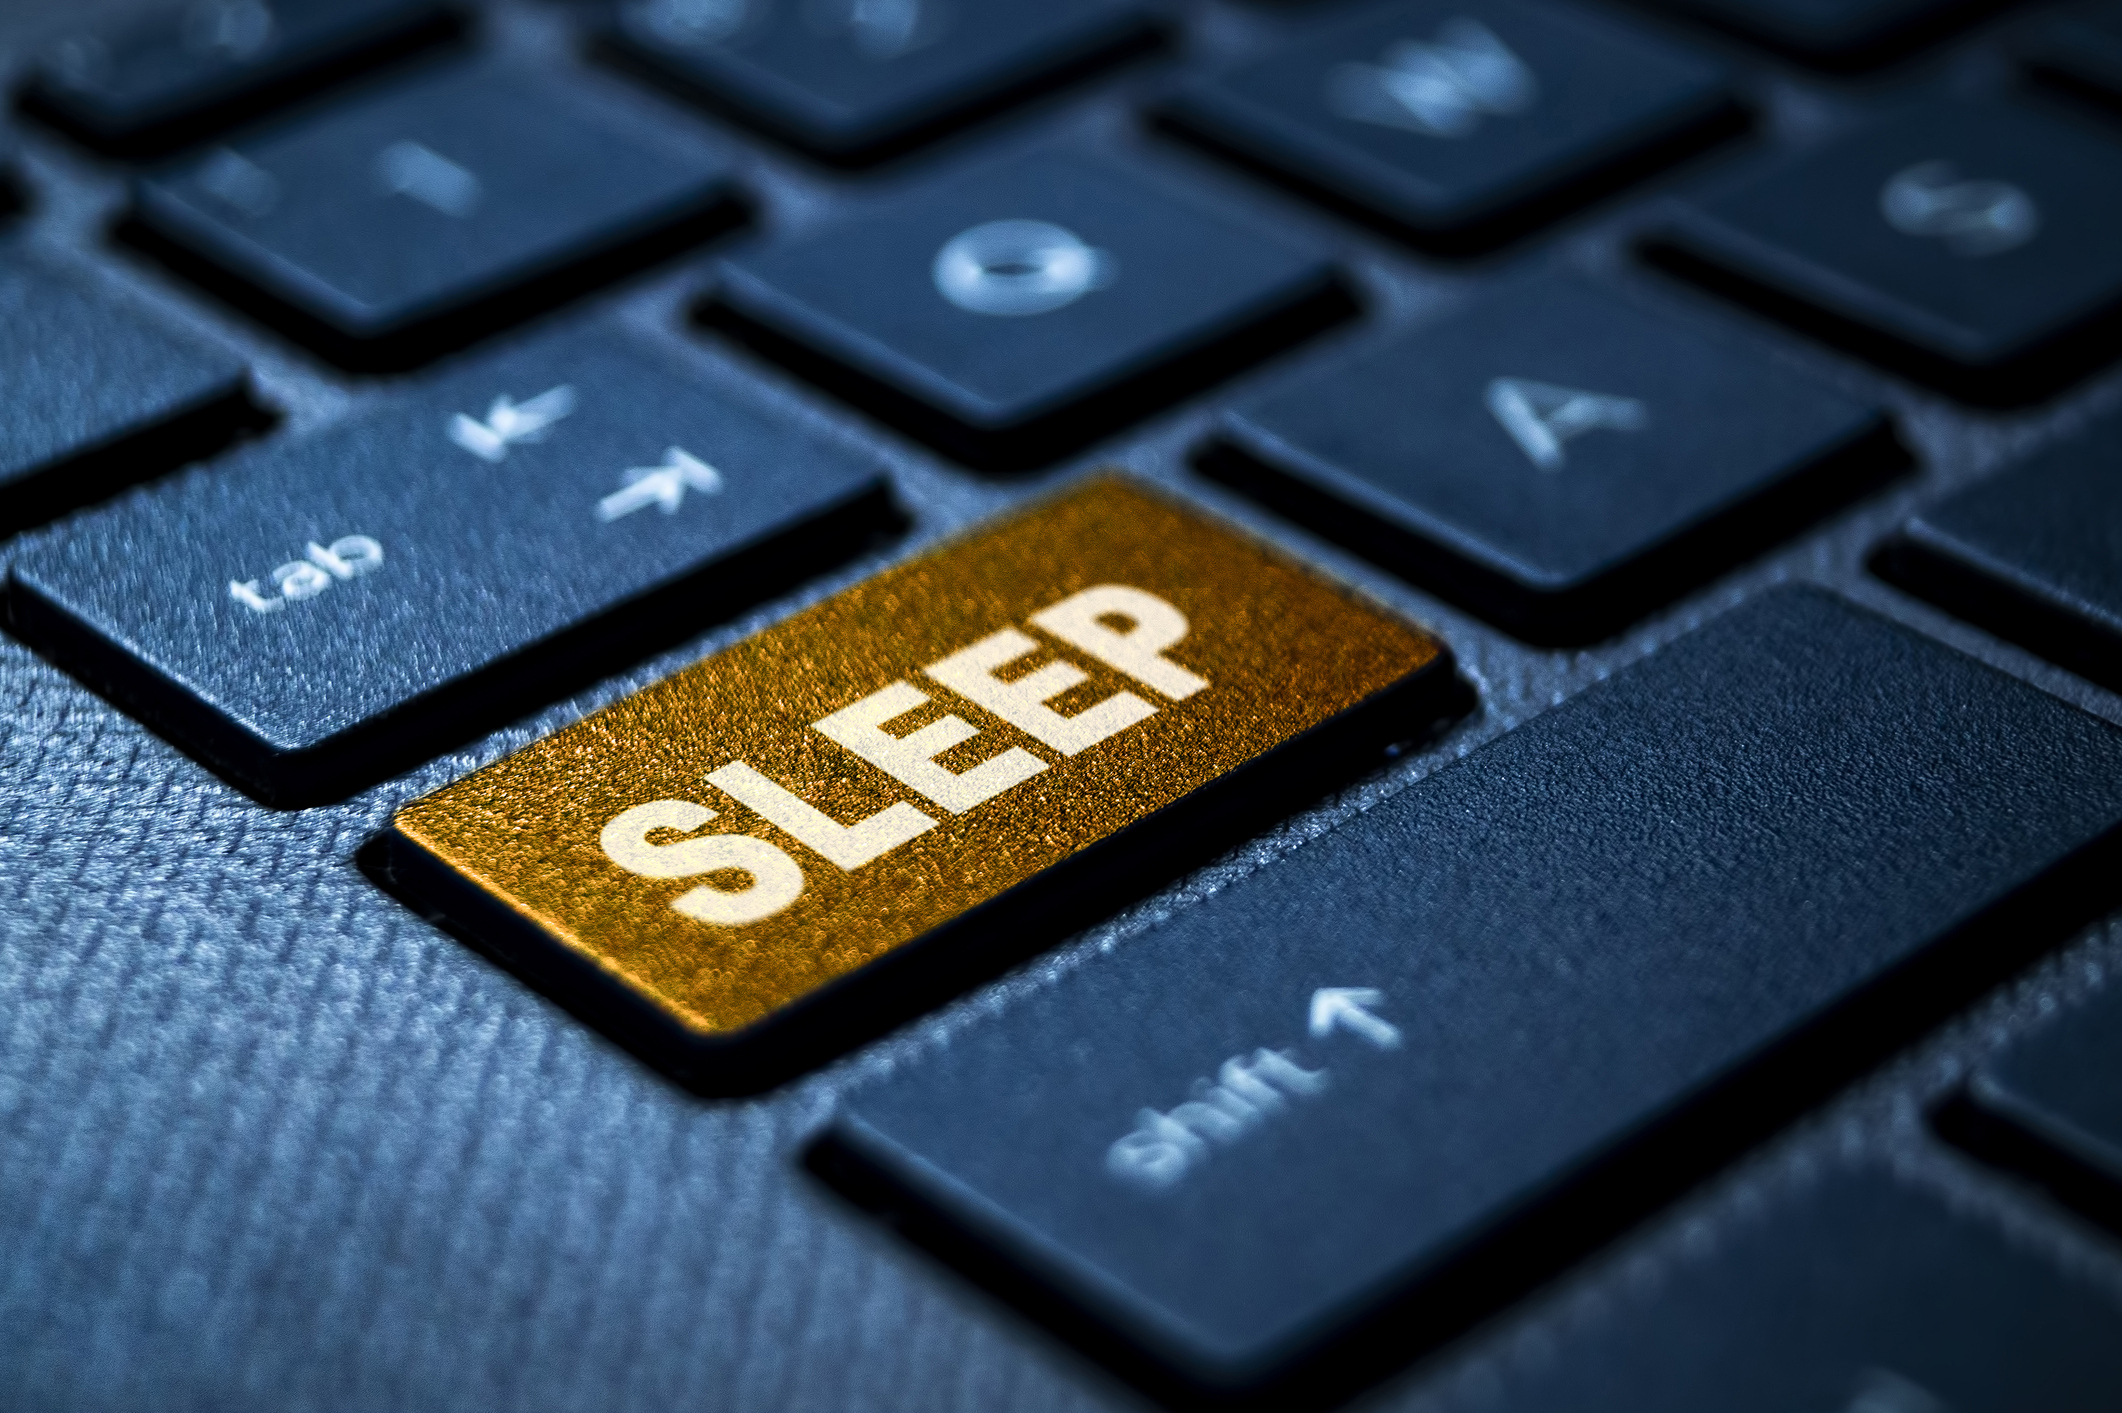 unisante web image mieux comprendre son sommeil clavier touche sleep